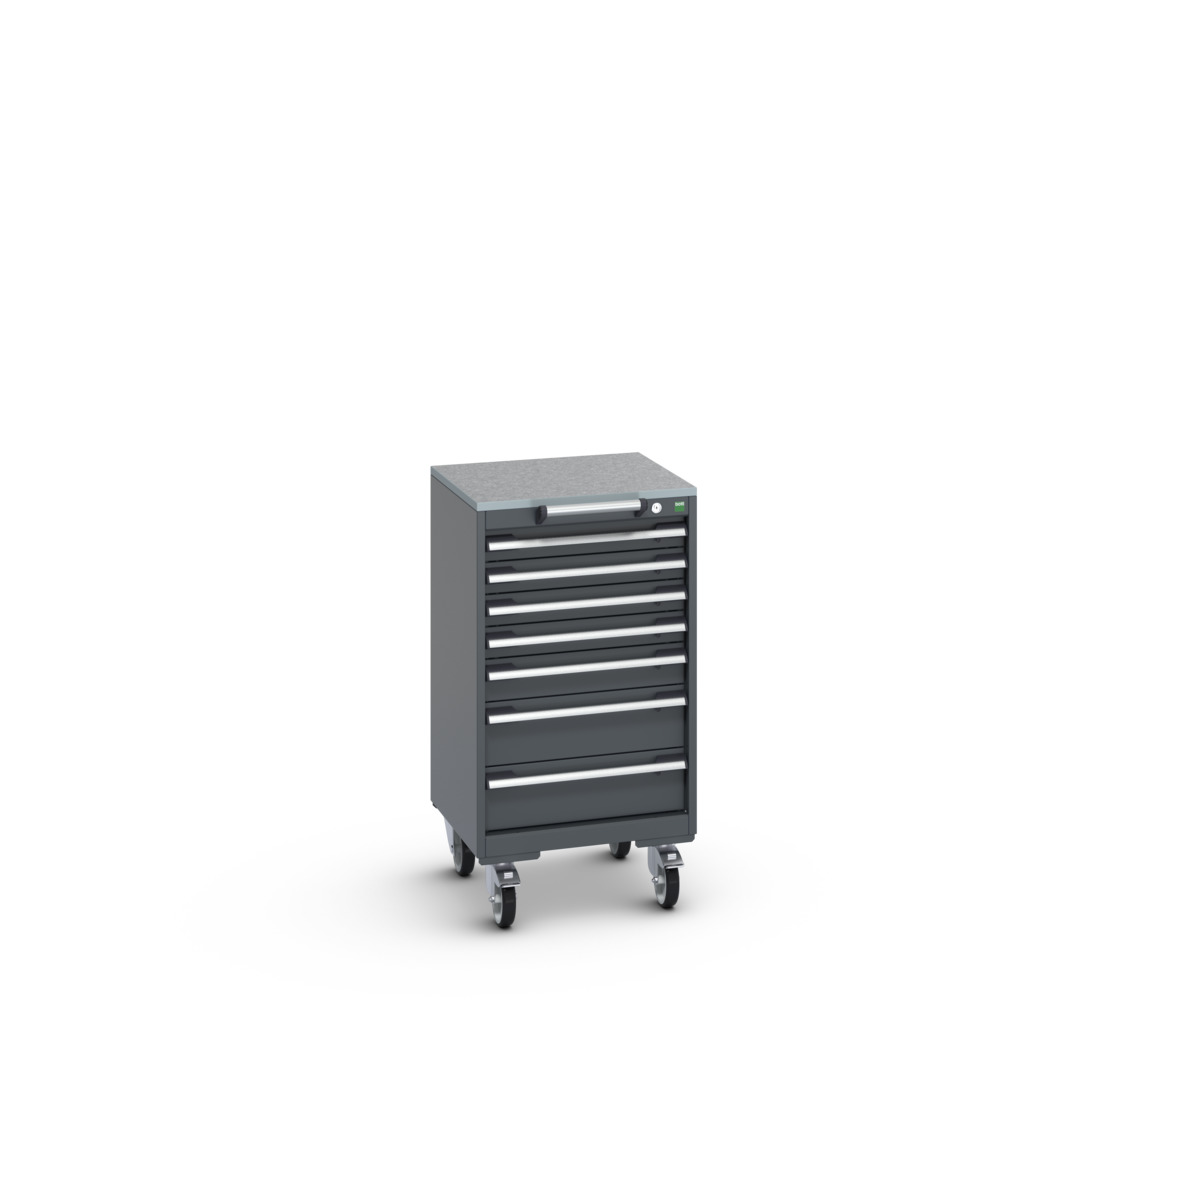 40402142.77V - cubio mobile cabinet